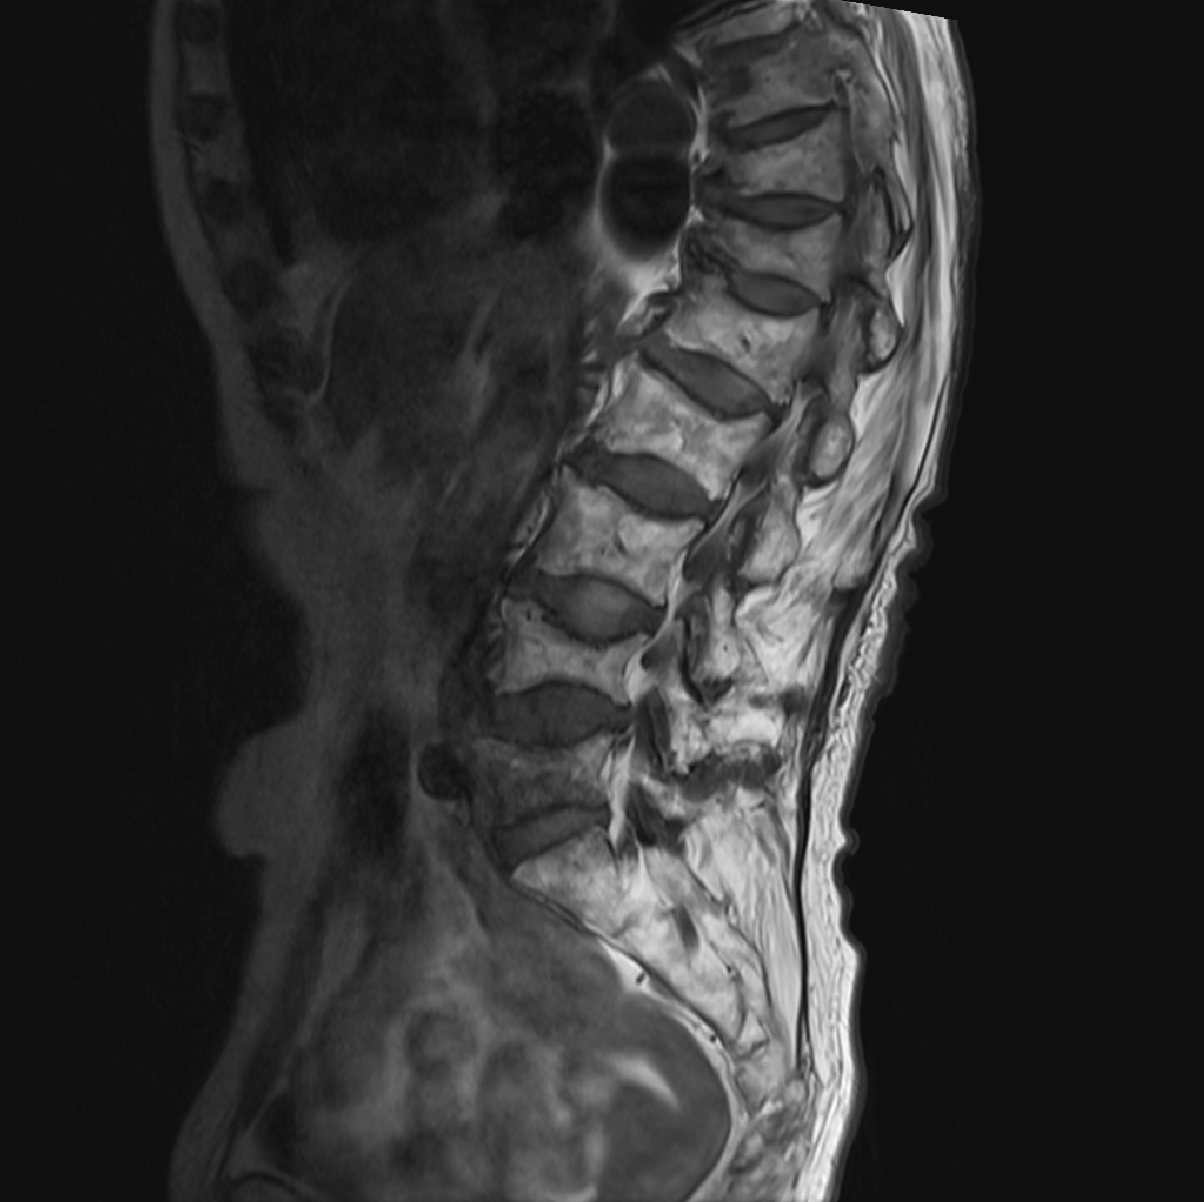 통증치료 및 경과관찰을 위한 멀티모달리티 데이터-질환별 라벨링 예시_6_골다공증성 통증 OP(Osteoporotic Fracture) MRI